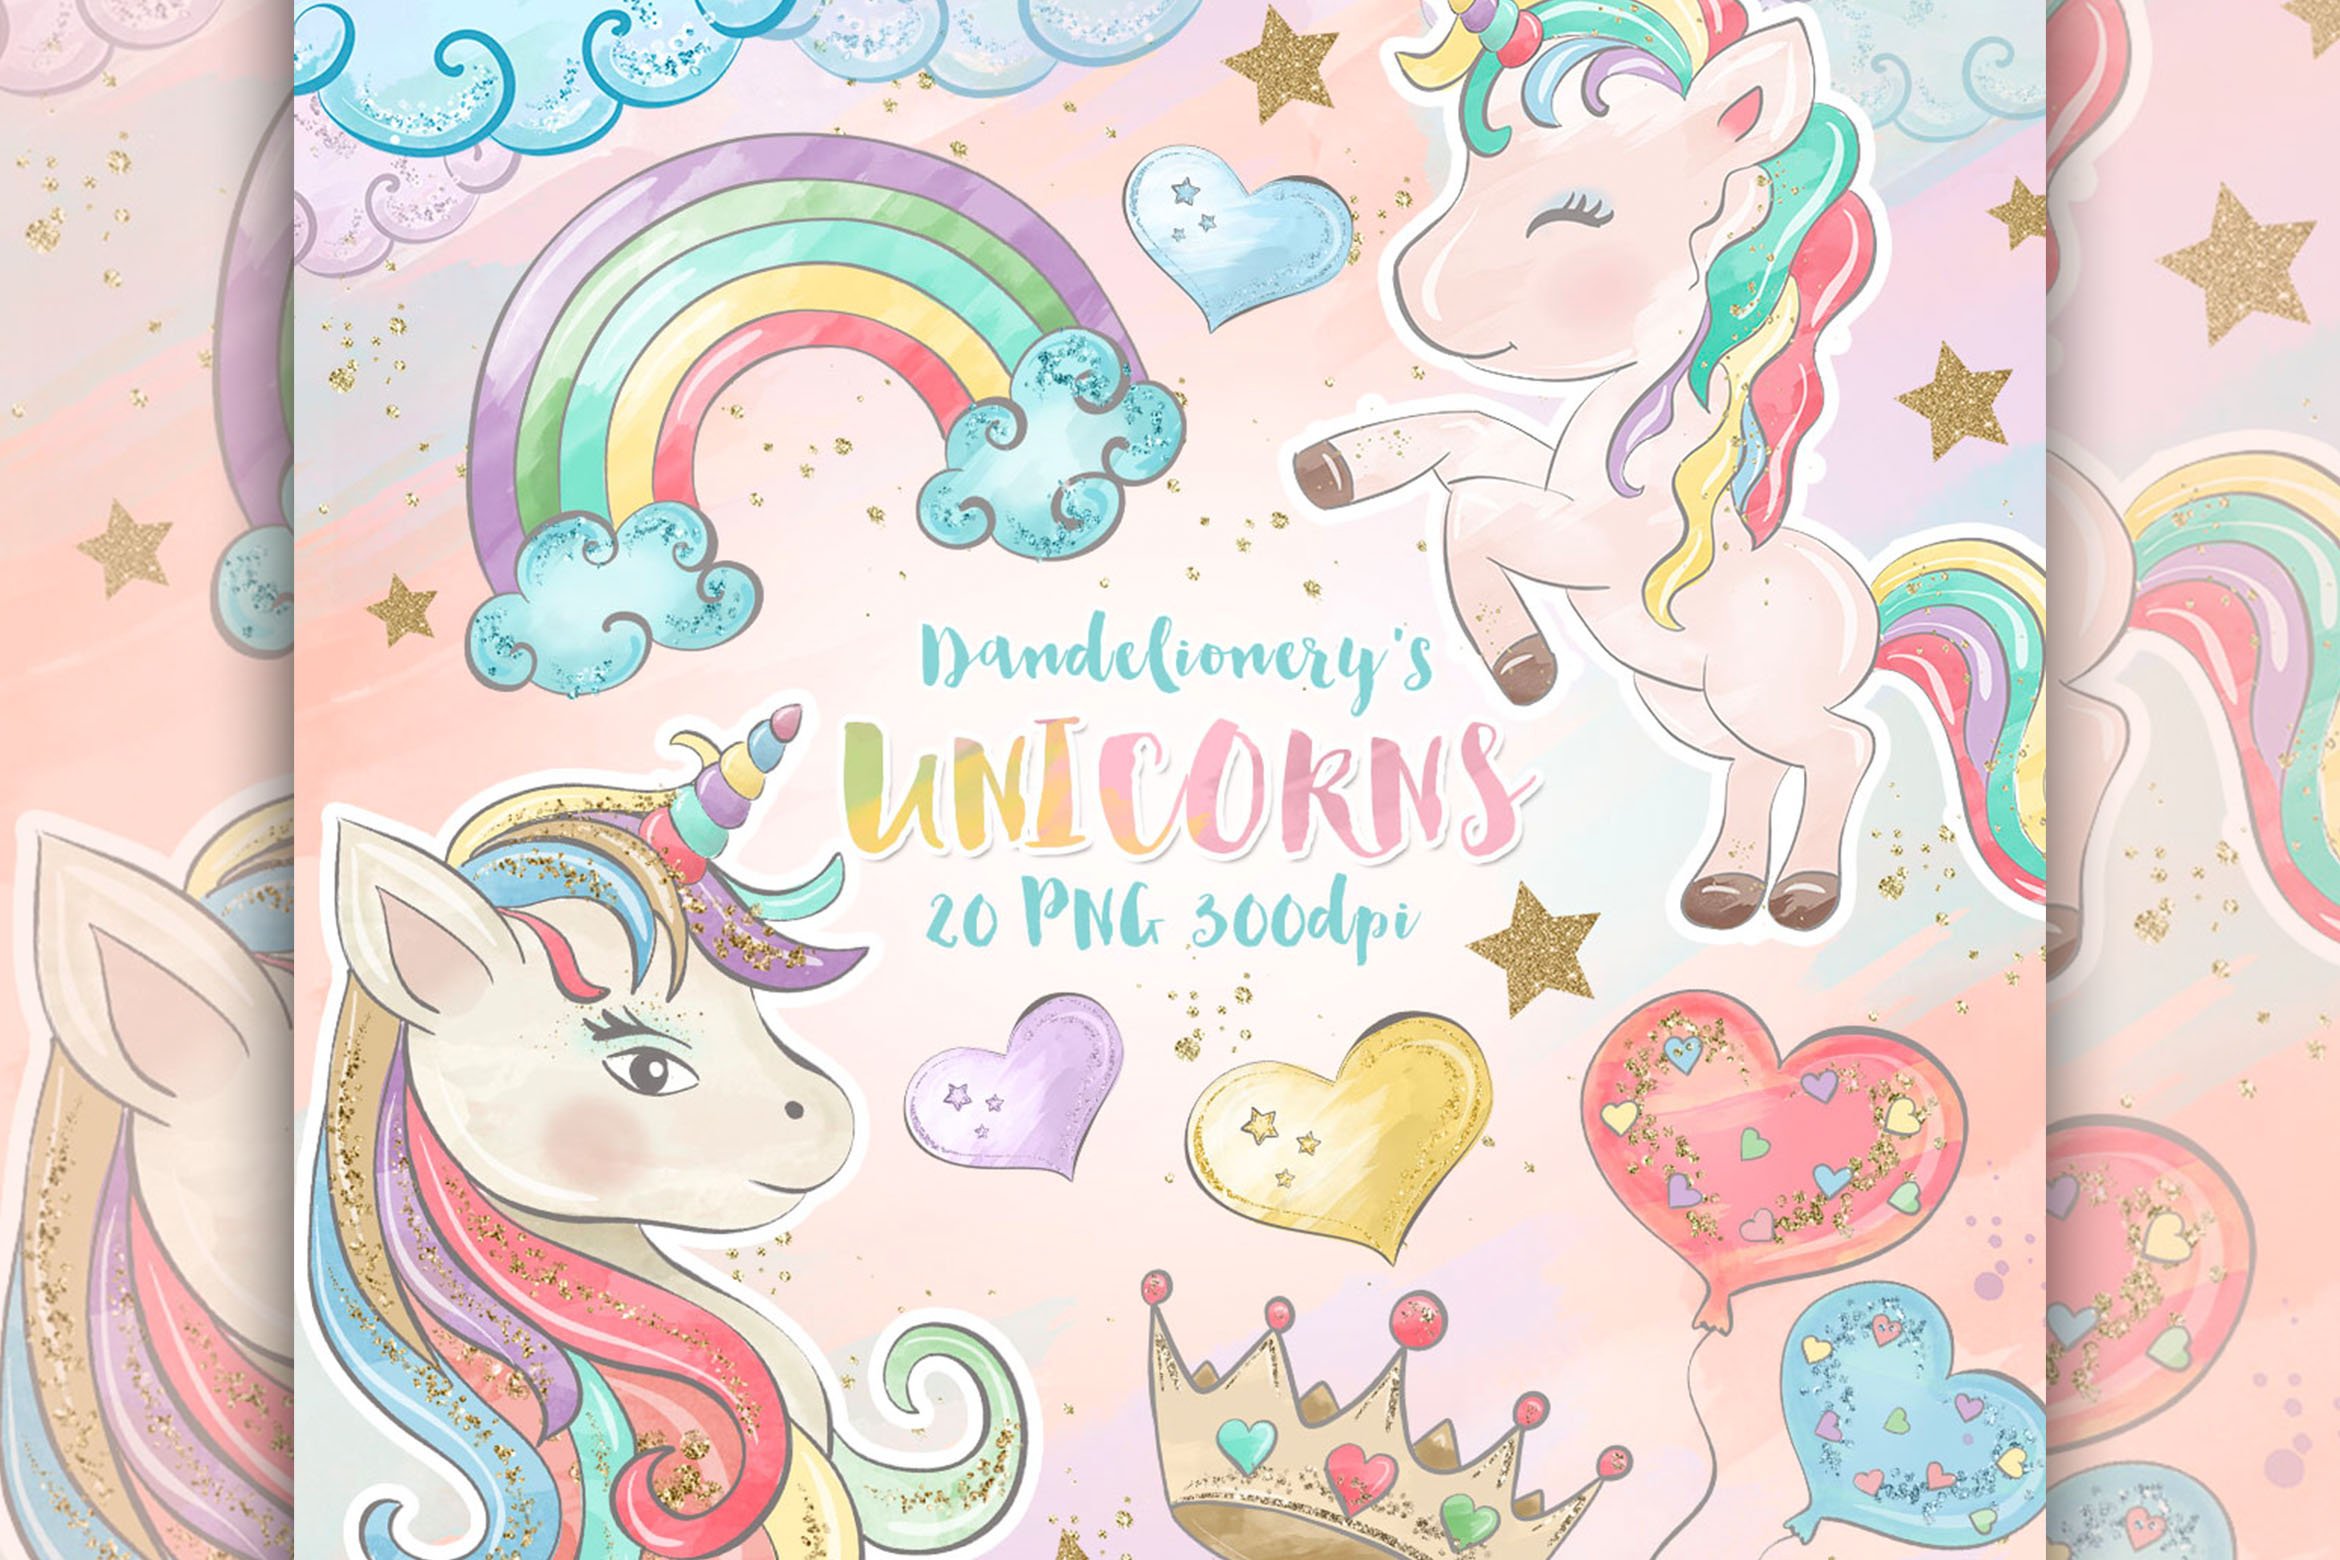 Unicorn dreams design preview image.